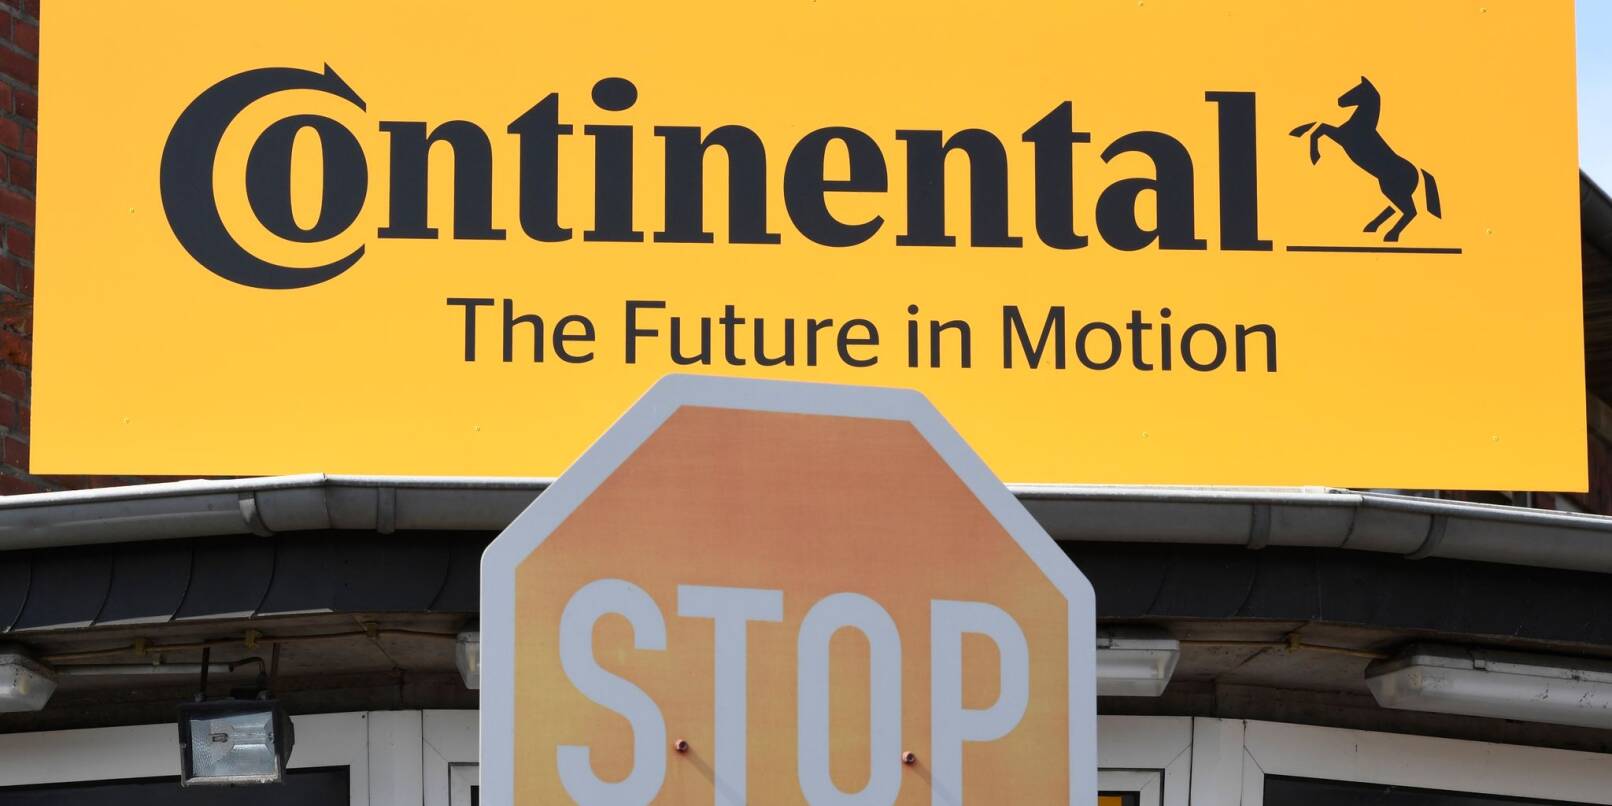 Continental will ab 2025 eine jährliche Kostenentlastung von 400 Millionen Euro zu erreichen.